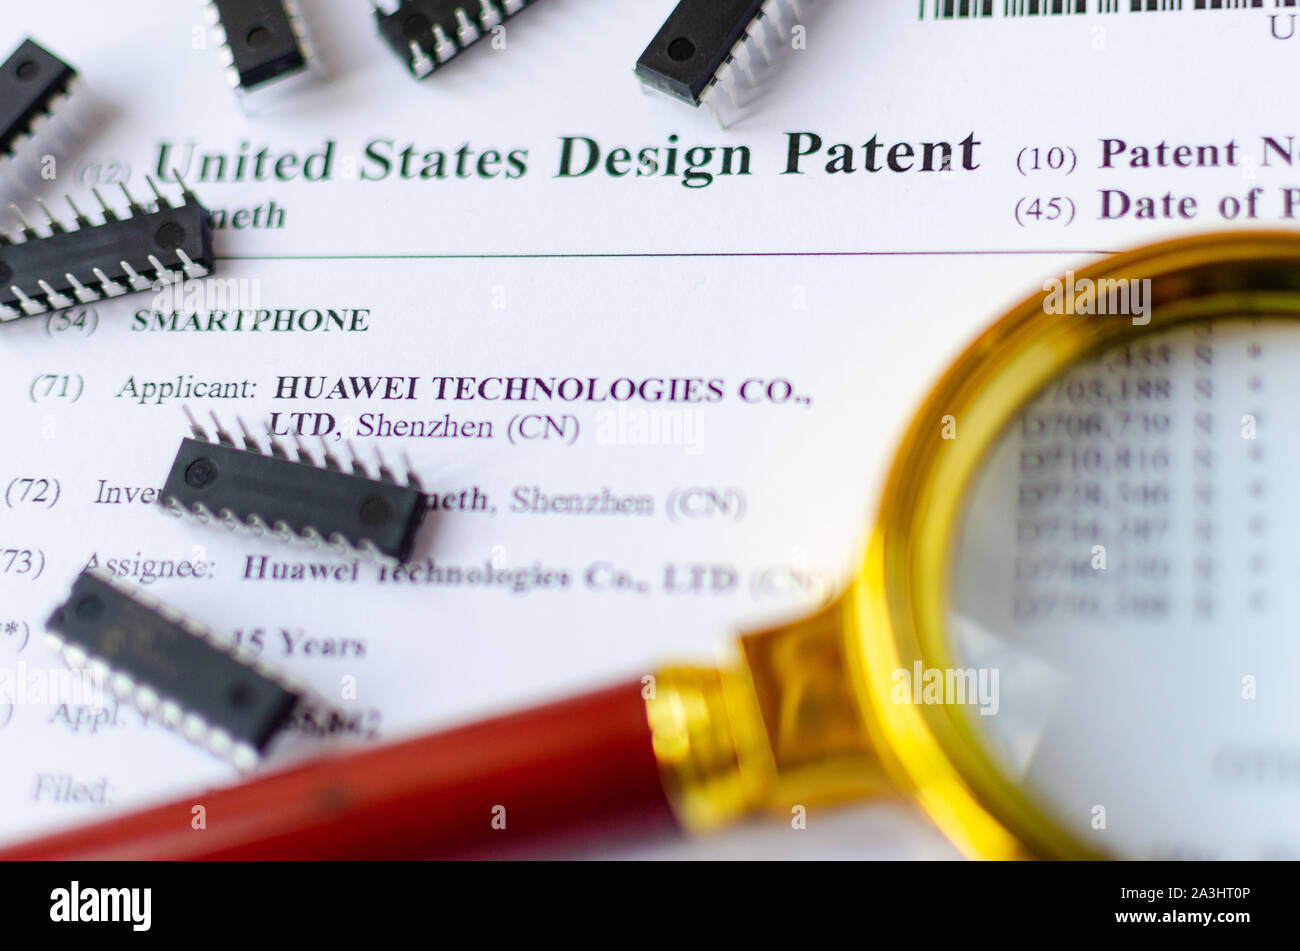 Le gros plan photo de Huawei brevet américain, loupe et puces électroniques. Technologies chinois sont sous enquête. Banque D'Images